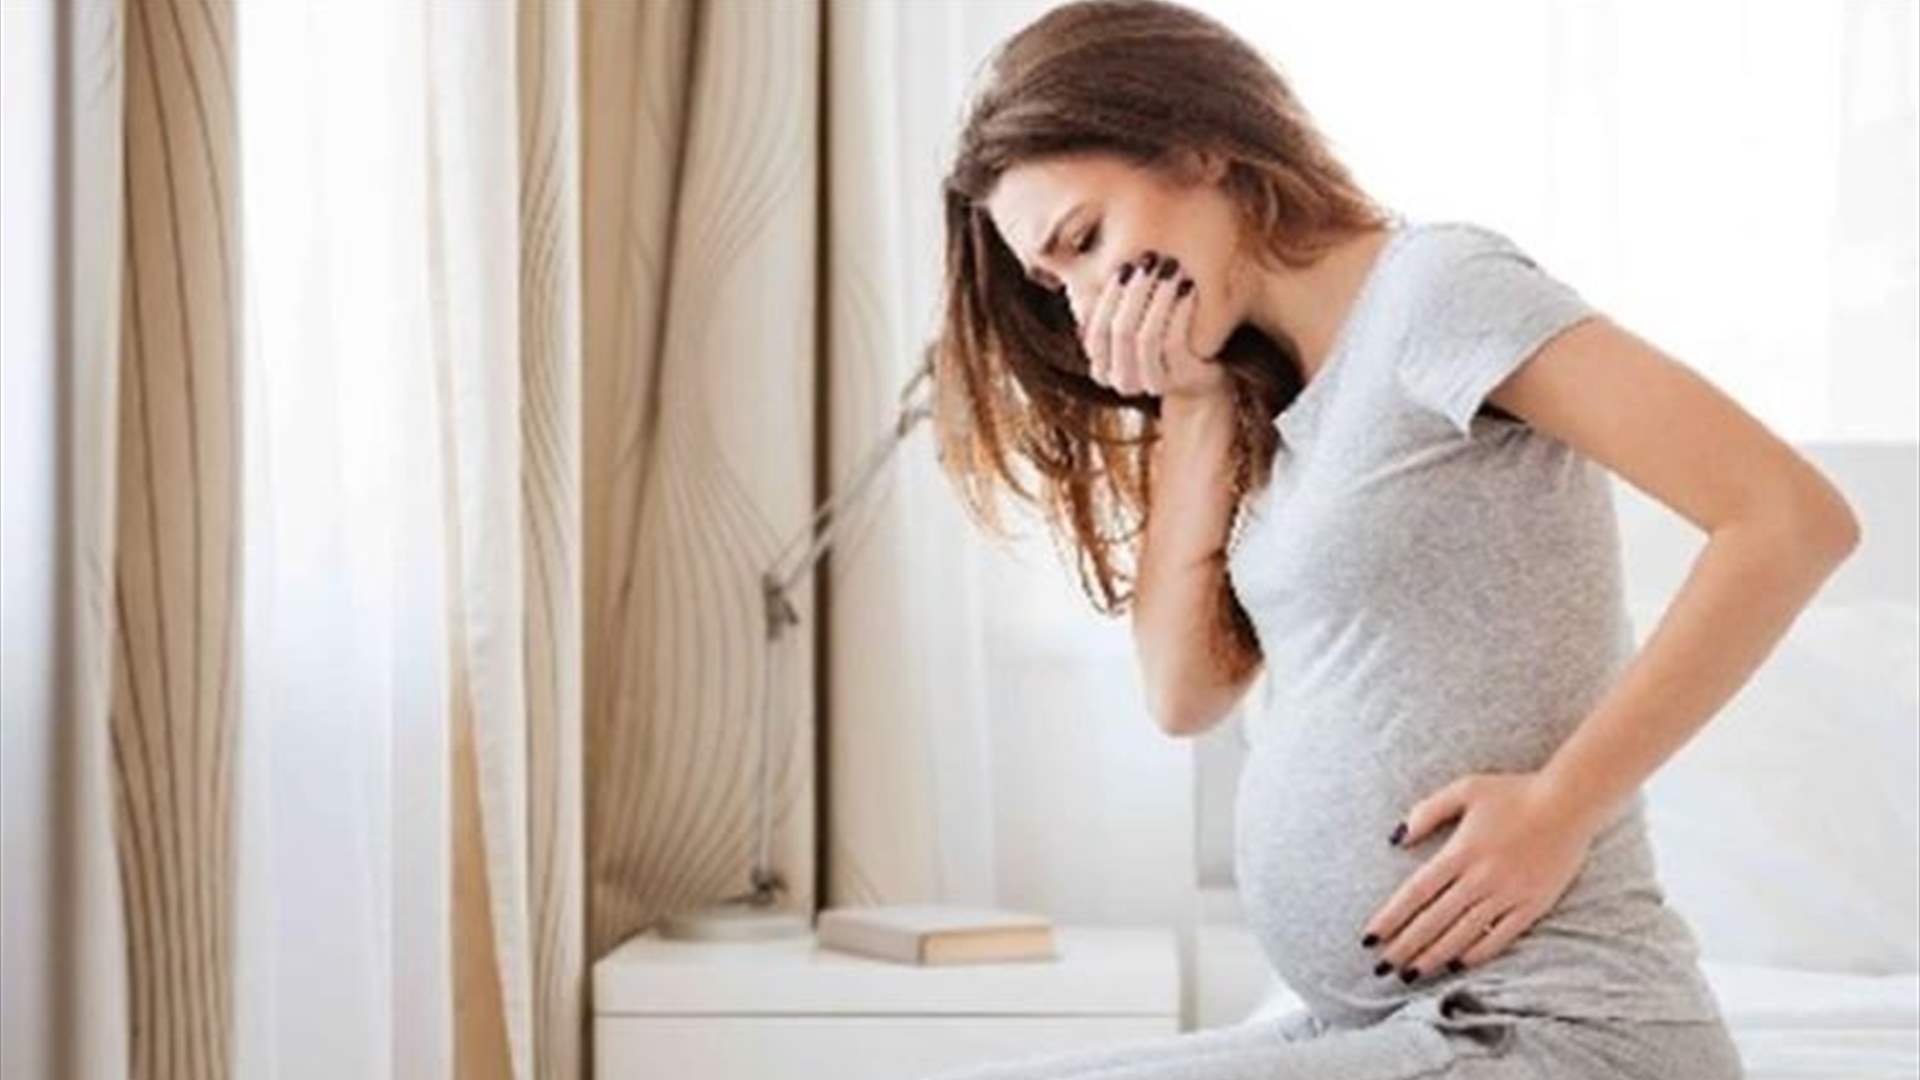 هرمون ينتجه الجنين مسؤول عن حالات القيء لدى النساء الحوامل